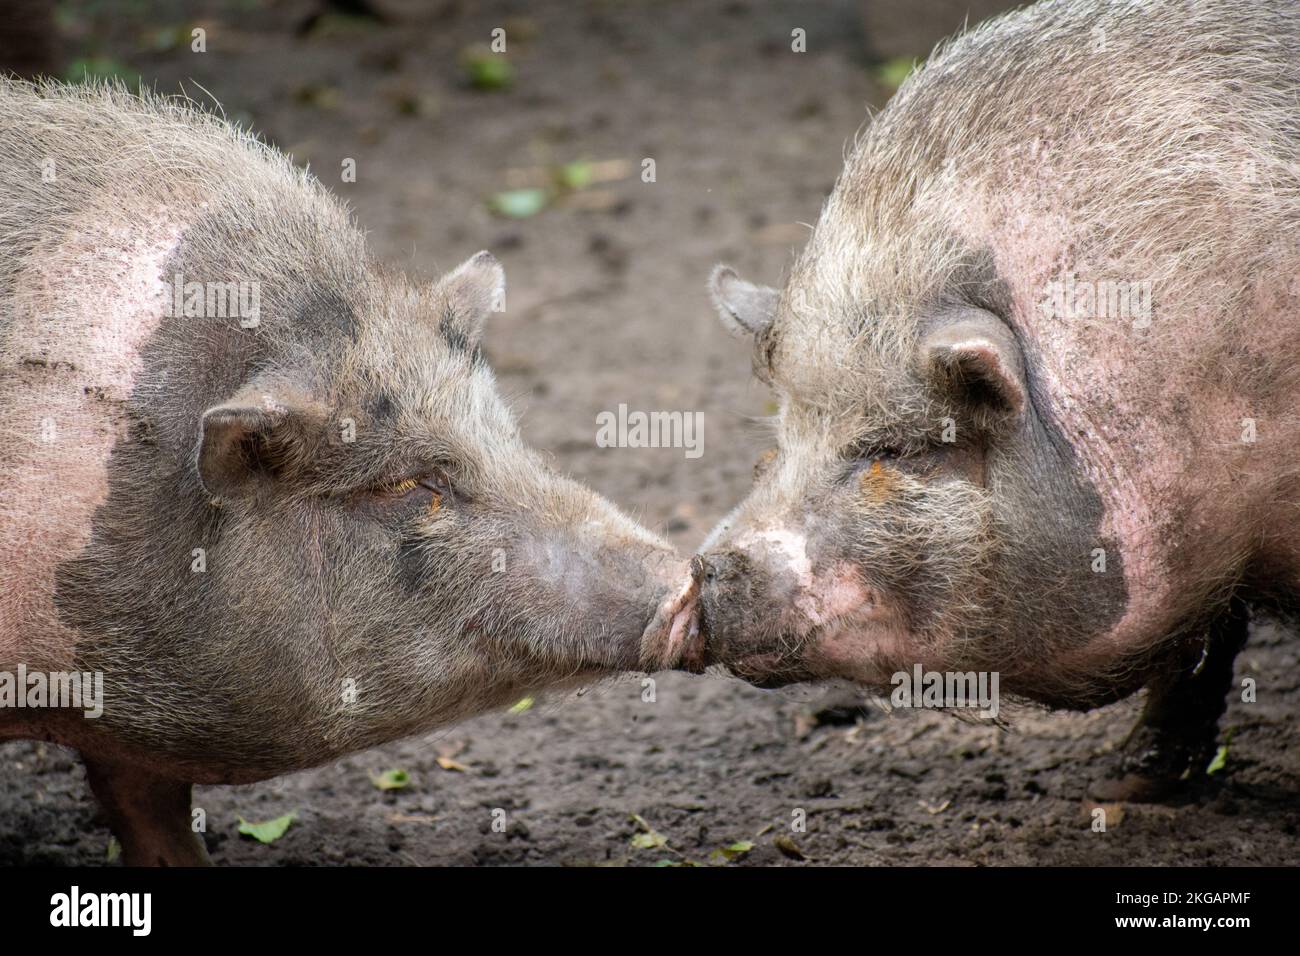 Un cochon vietnamien de pot-bellied adulte embrassant sur un sol boueux Banque D'Images